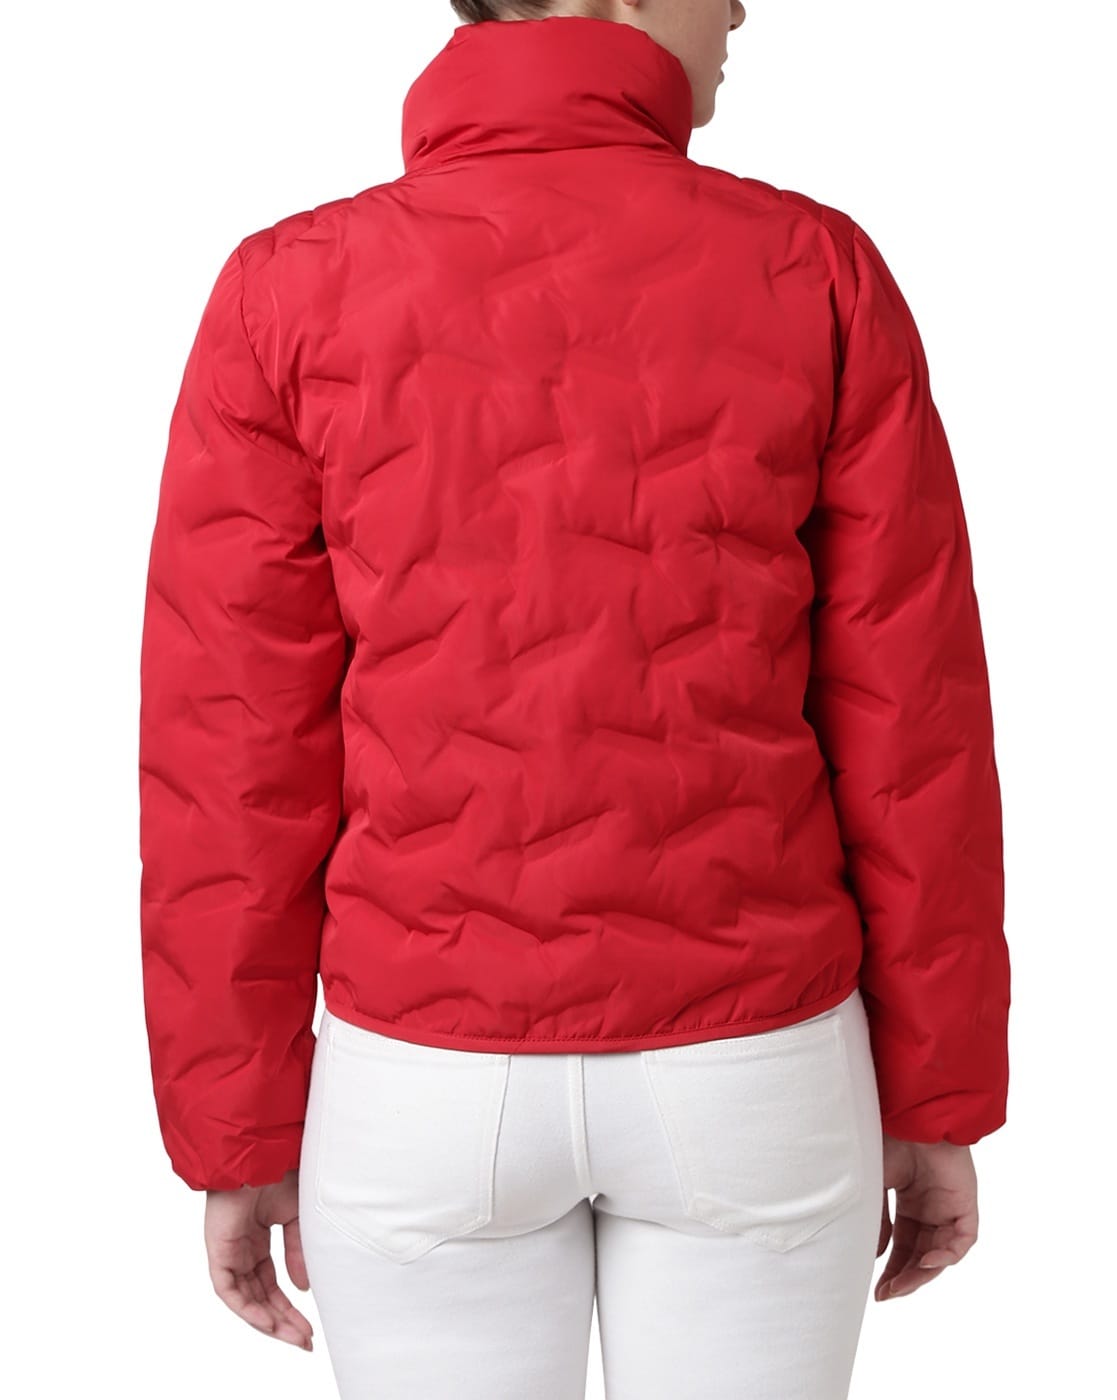 armani exchange jacket red